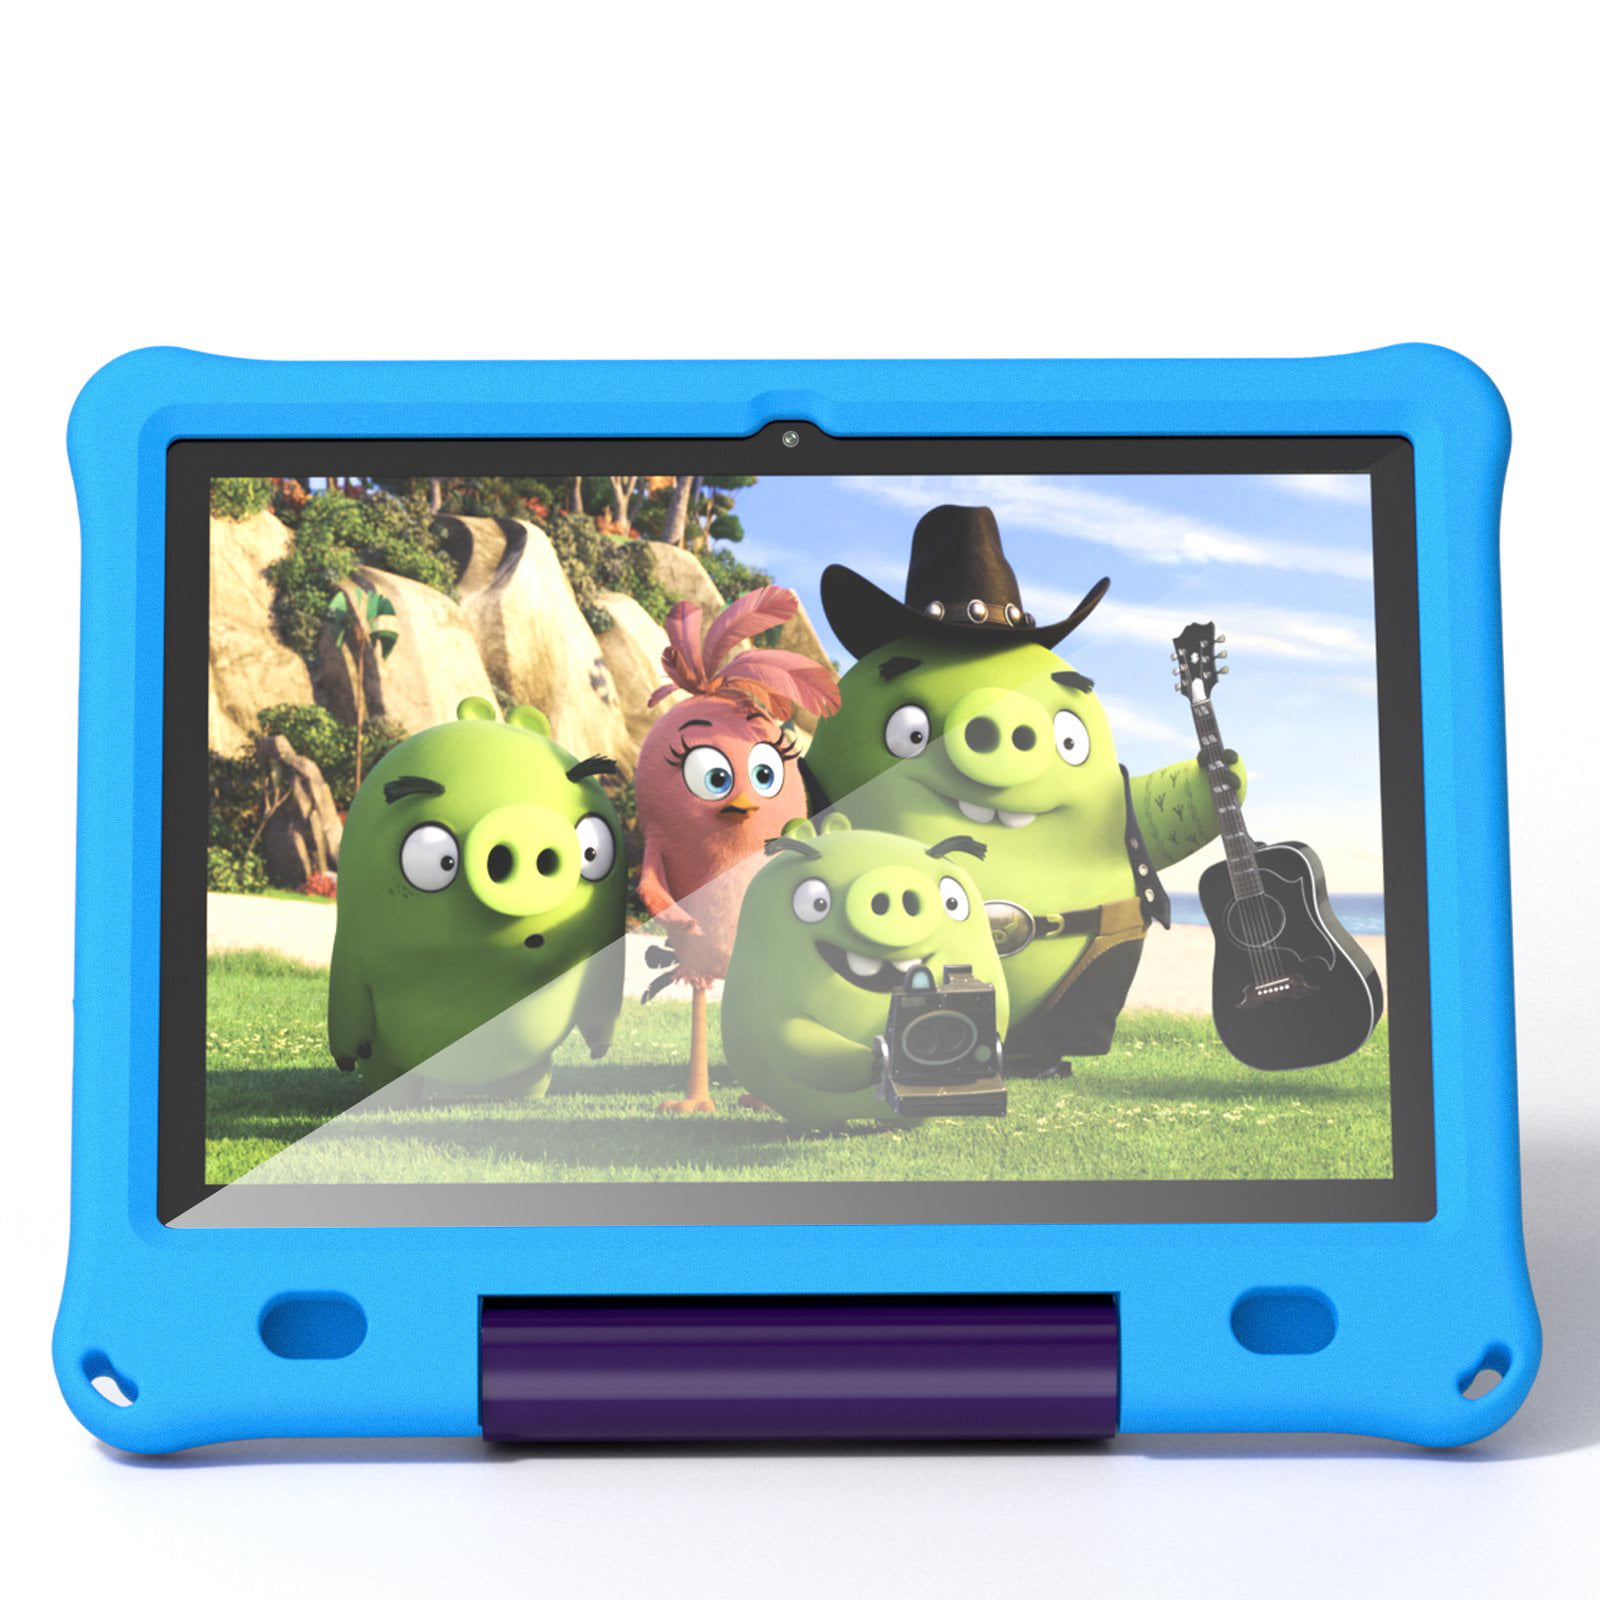 B10K-B,10 inch kids tablet,Blue - Walmart.com